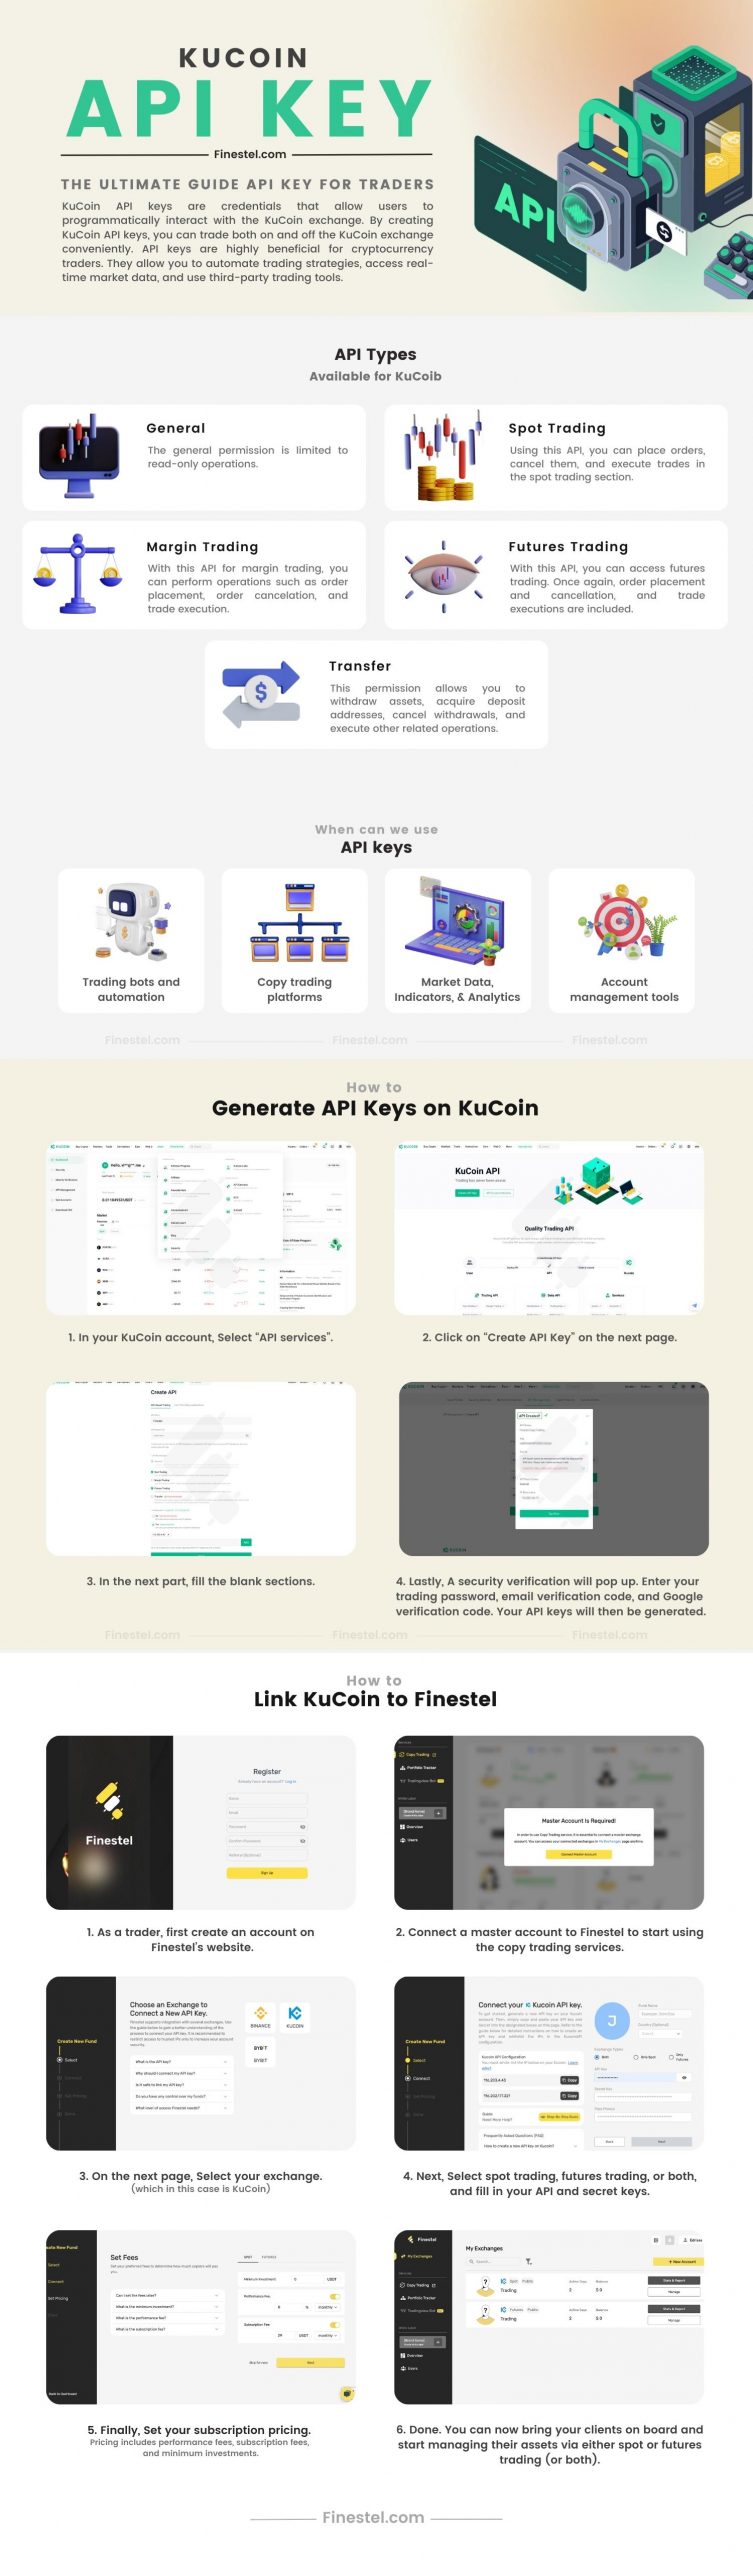 KuCoin API Key Full Guide Infographic